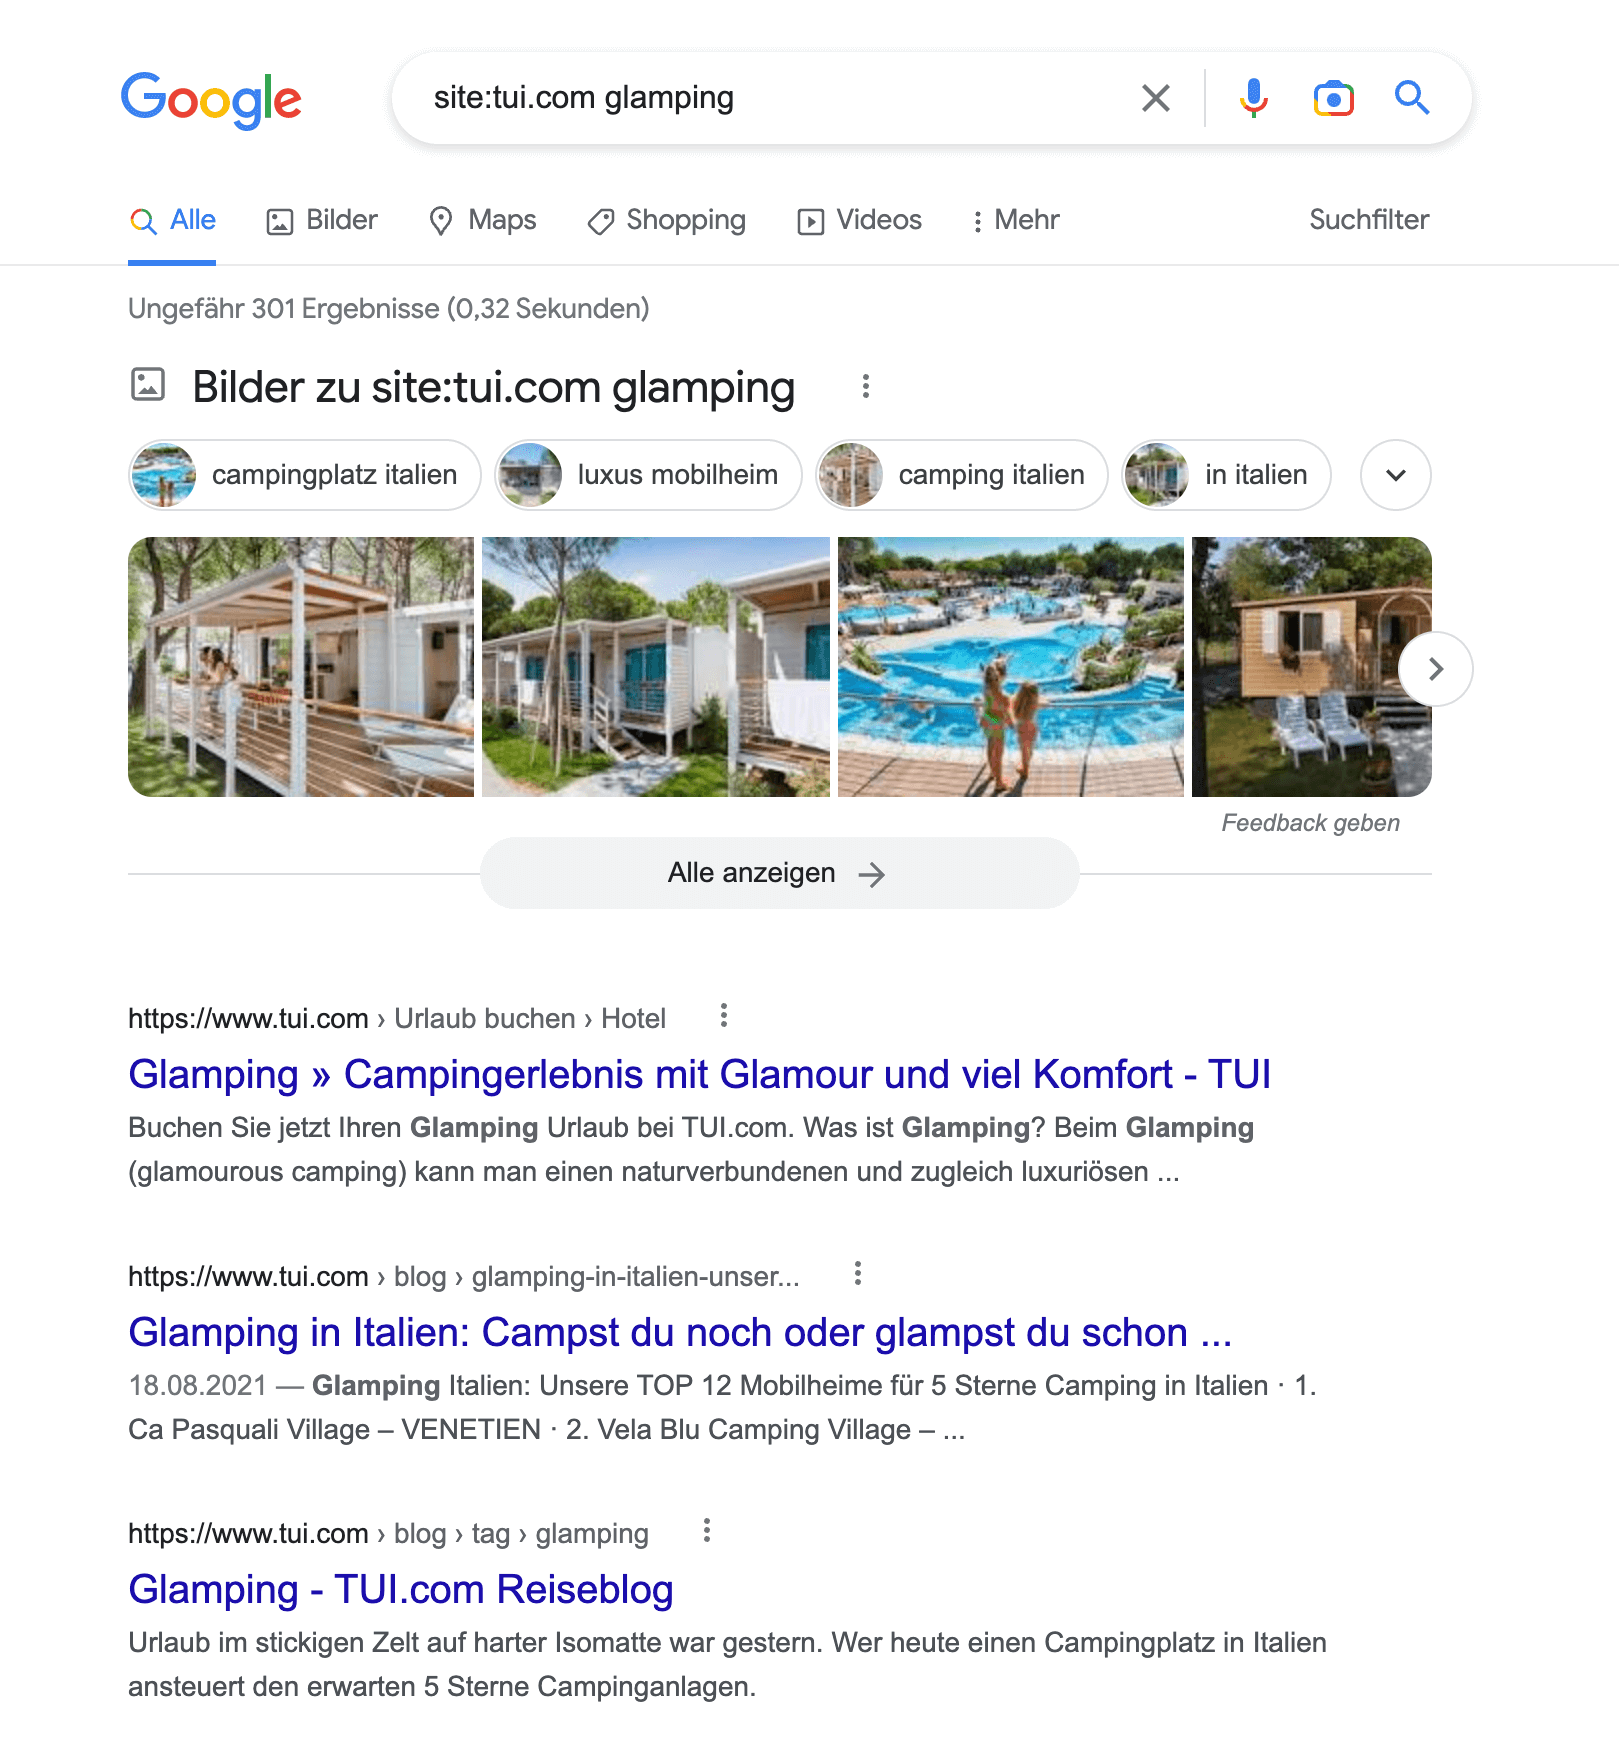 Google Suchergebnisseite für die Anfrage site:tui.com glamping. Es werden verschiedene Unterseiten auf Tui.com angezeigt. Manche sind Kategorieseiten, andere Informationsseiten, wieder andere Produktseiten.